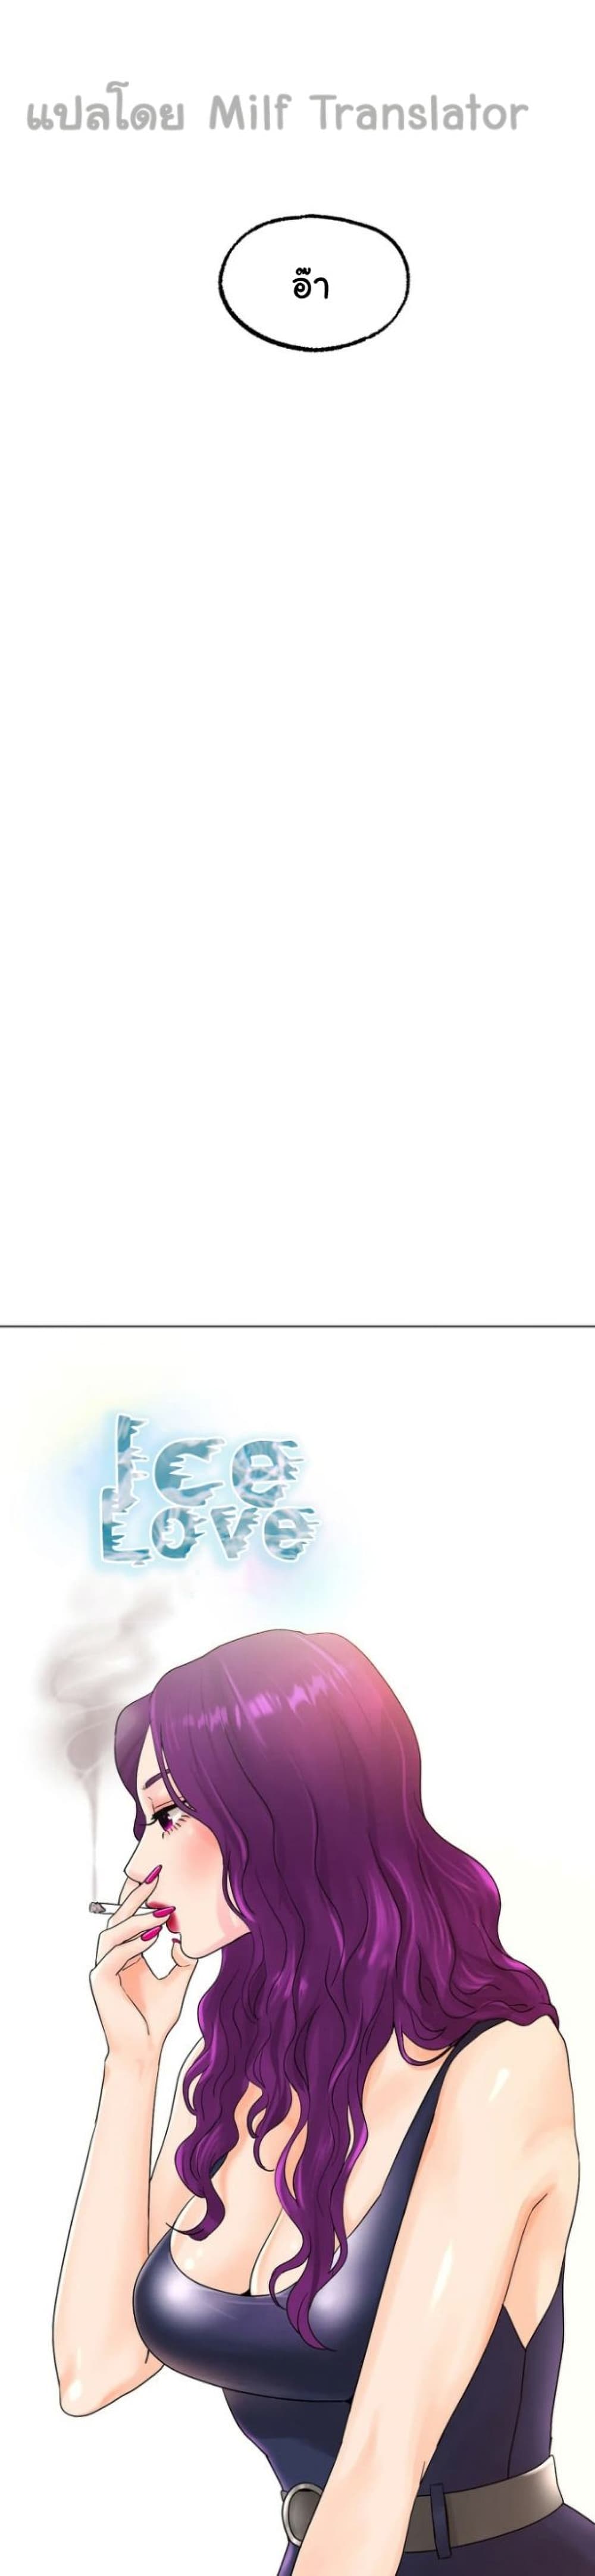 Ice Love 12 19